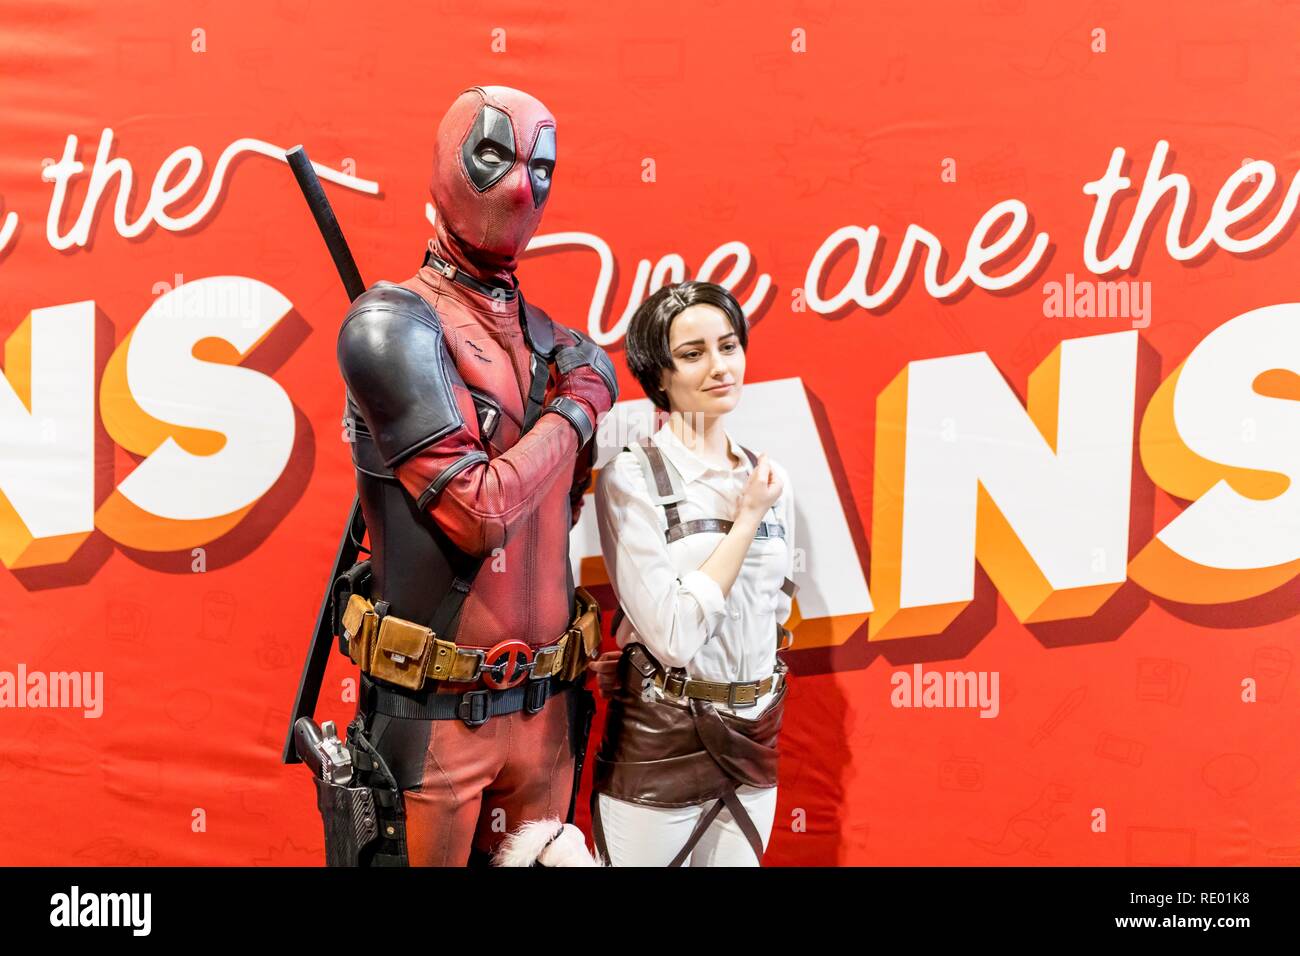 Birmingham, UK - le 17 mars 2018. Jeune garçon pose ventilateur comicon pointing gun avec Marvel Comics Deadpool personnage costumé en cosplay à une bande dessinée conv Banque D'Images